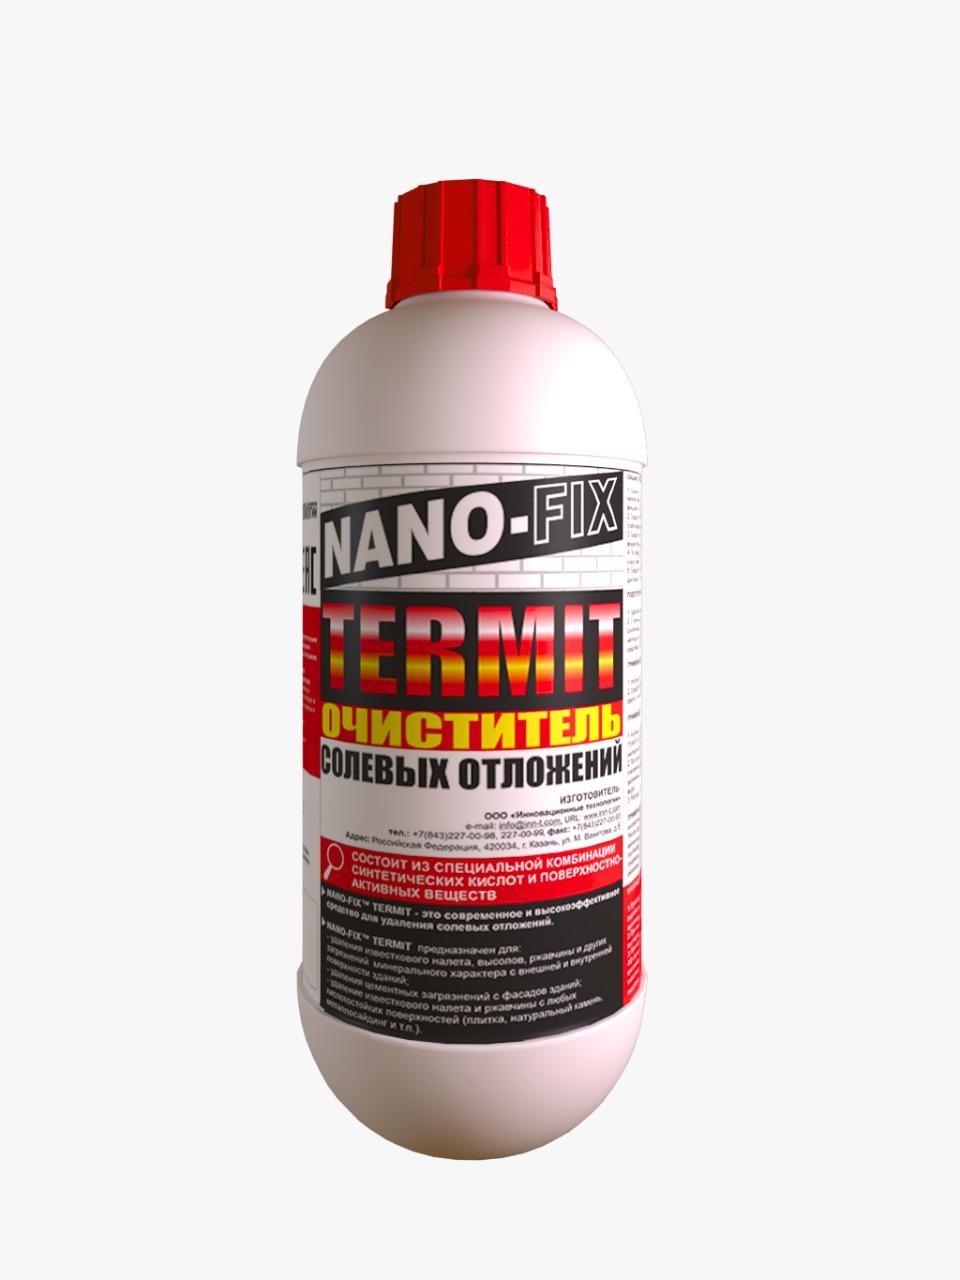 NANO-FIX TERMIT-средство для очистки поверхностей от солевых отложений. Бурятия